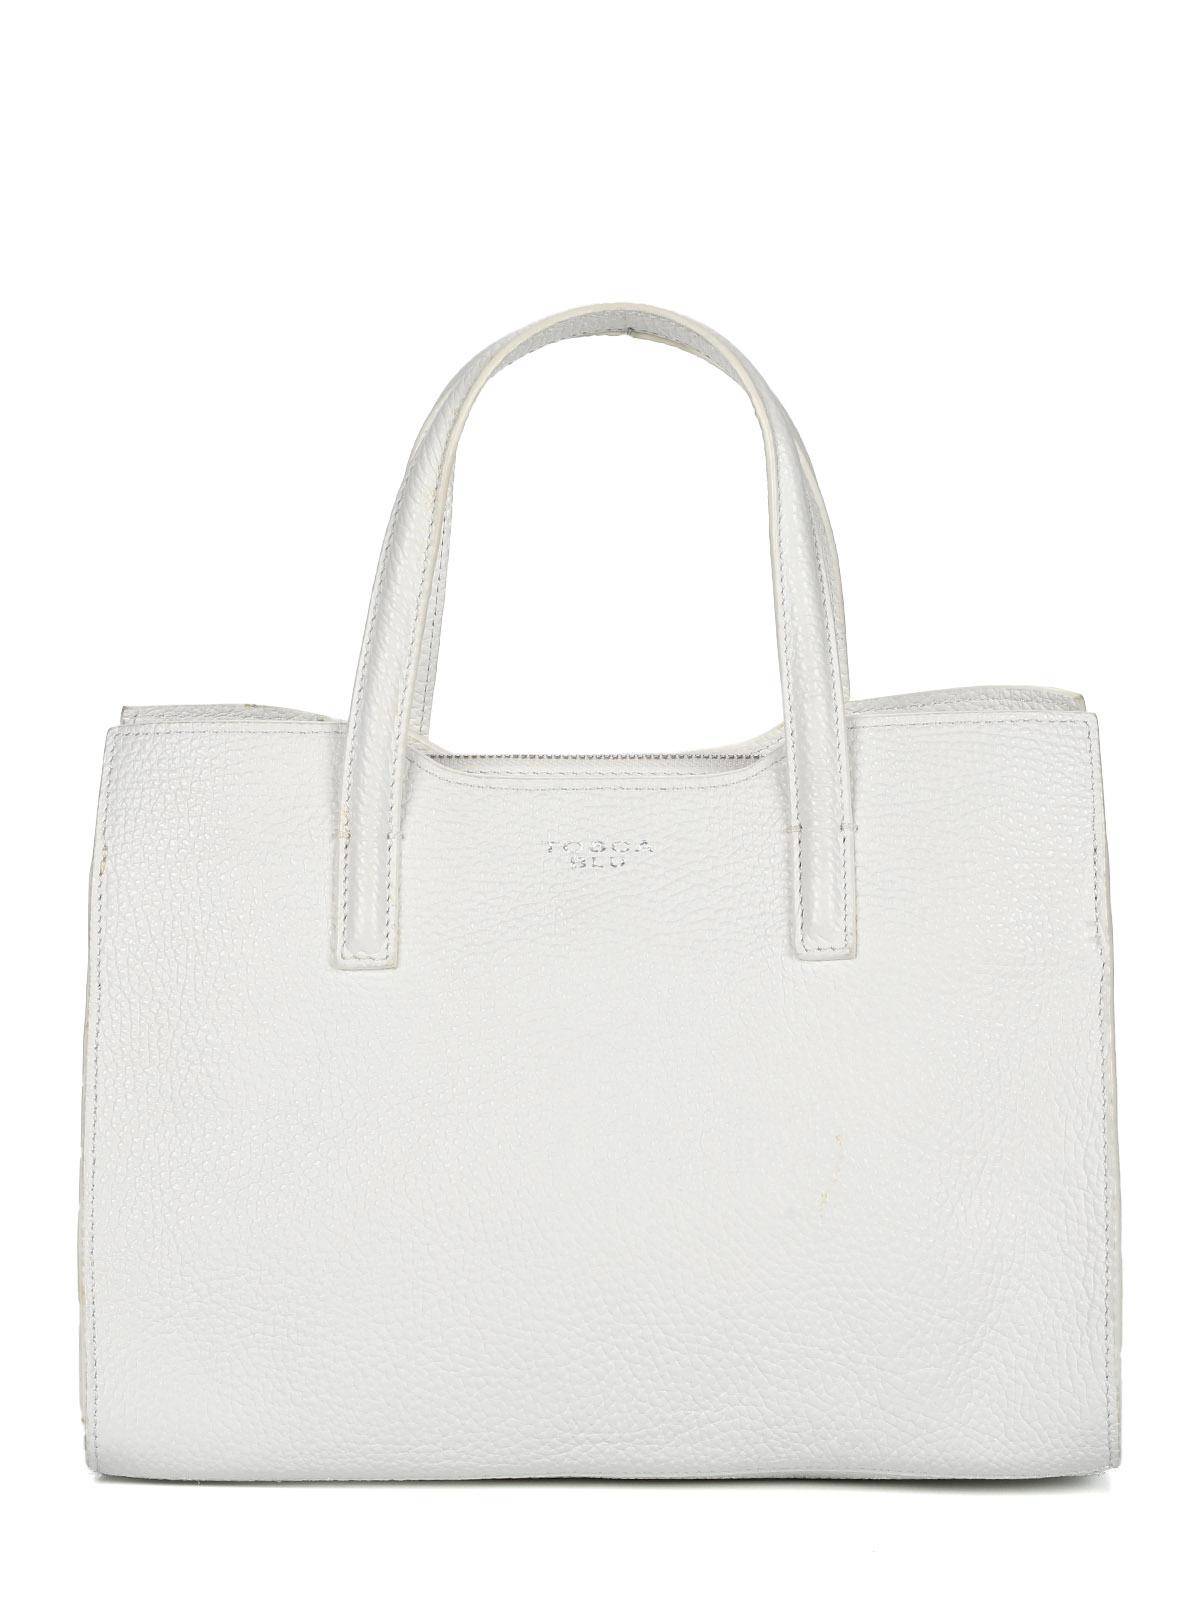 Женская сумка хэнд Tosca Blu, белая